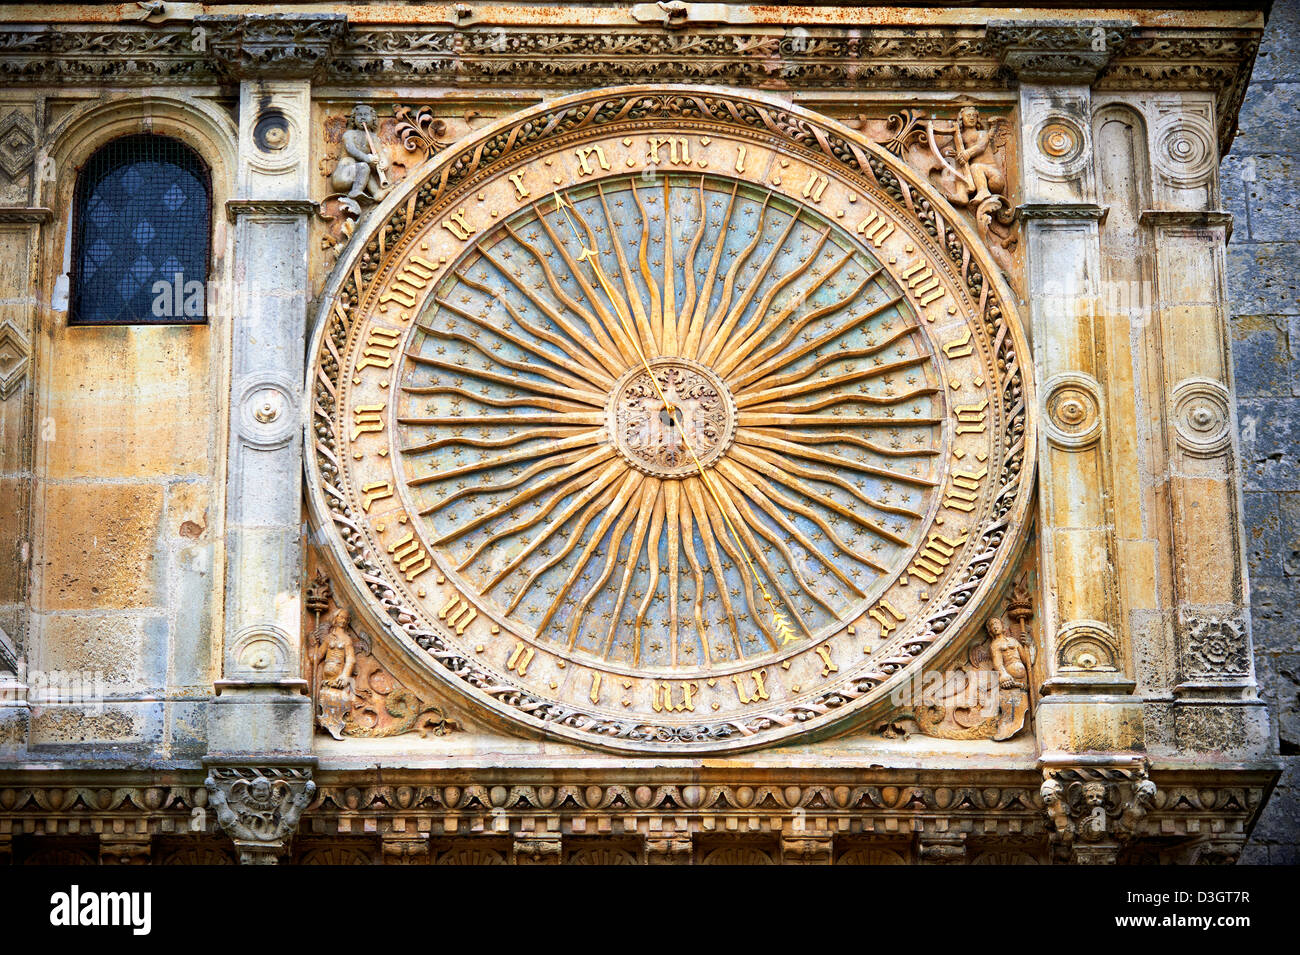 Die astronomische Uhr (1528) von der Kathedrale von Chartres, Frankreich. Ein UNESCO-Weltkulturerbe. Stockfoto